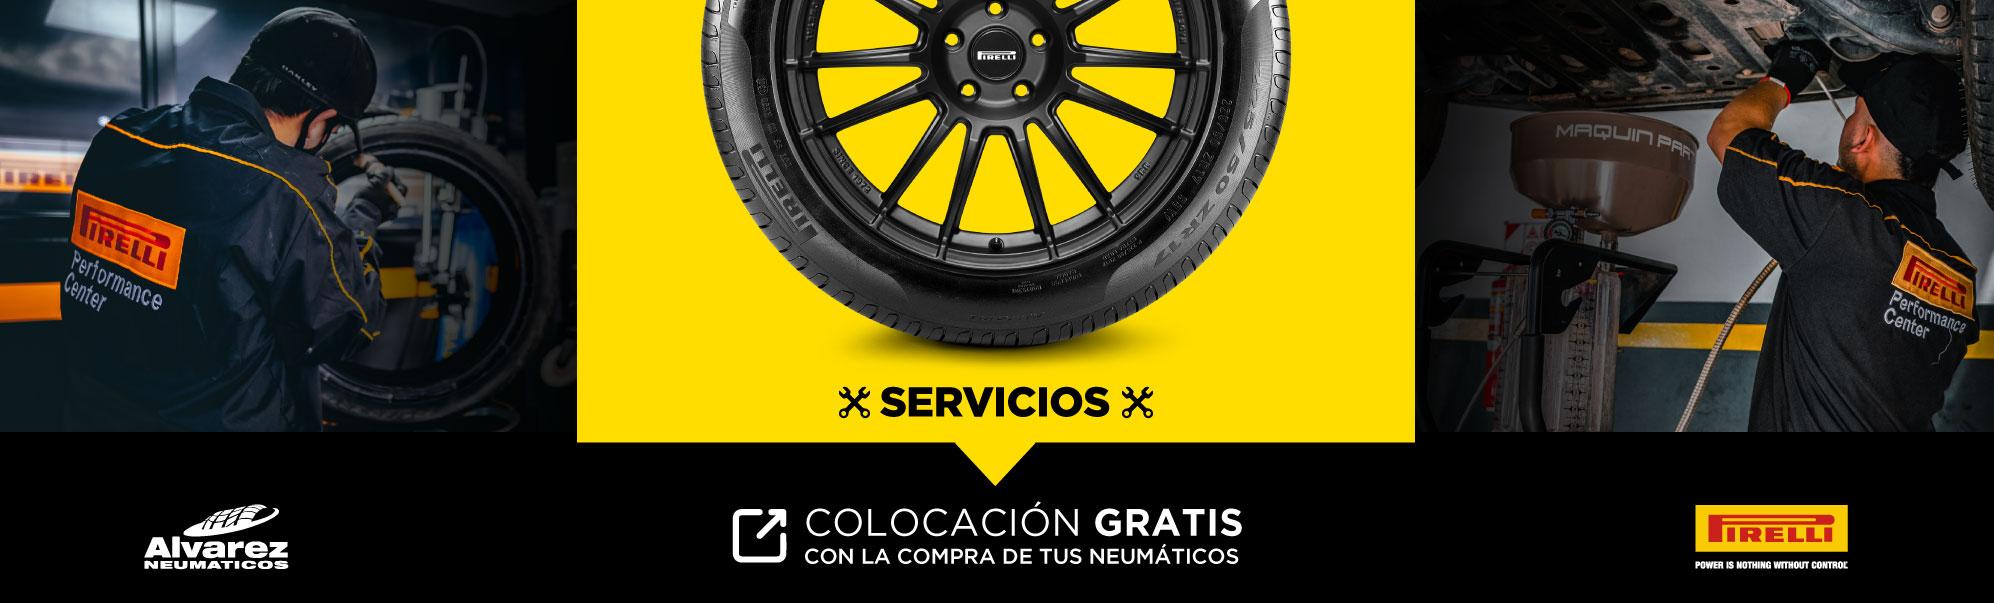 Colocación Gratis con la compra de tus neumáticos - Neumáticos Álvarez - Distribuidor Oficial Pirelli